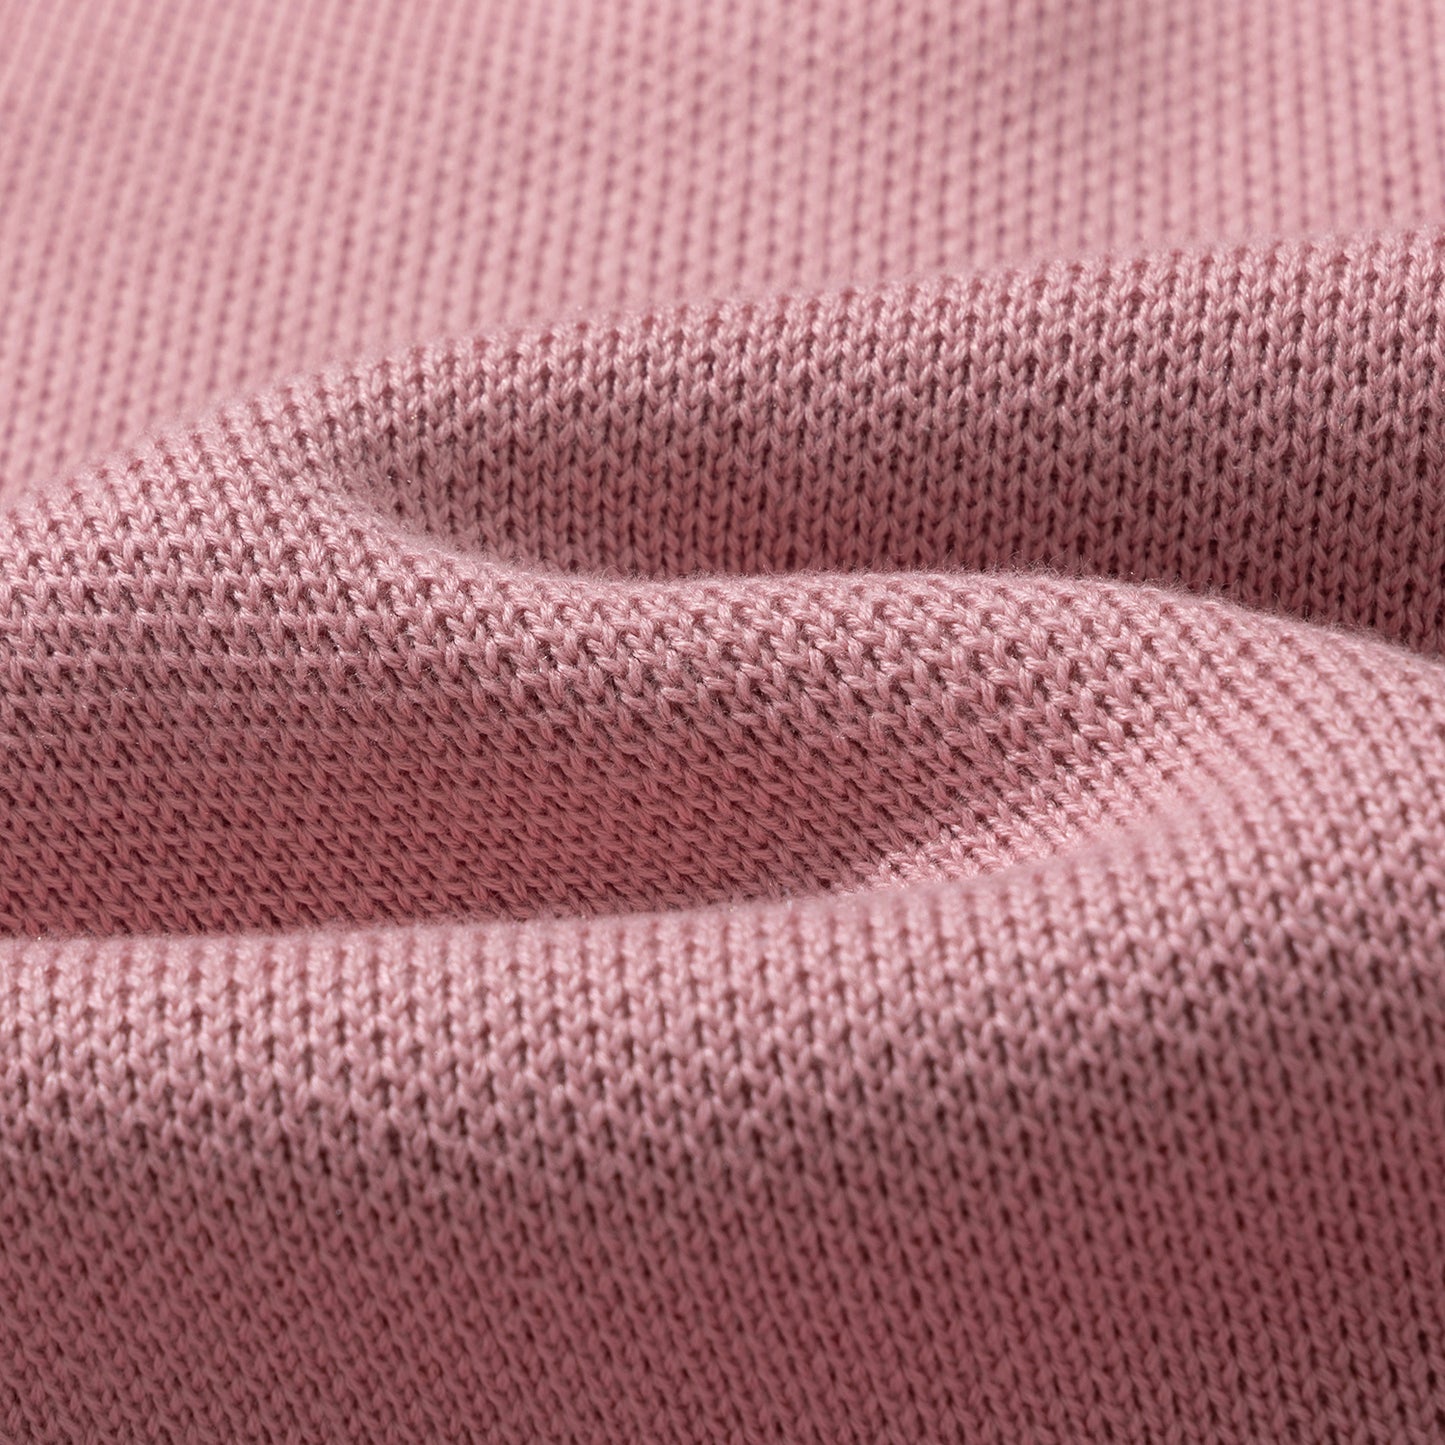 Sweater Delta, Dusty pink